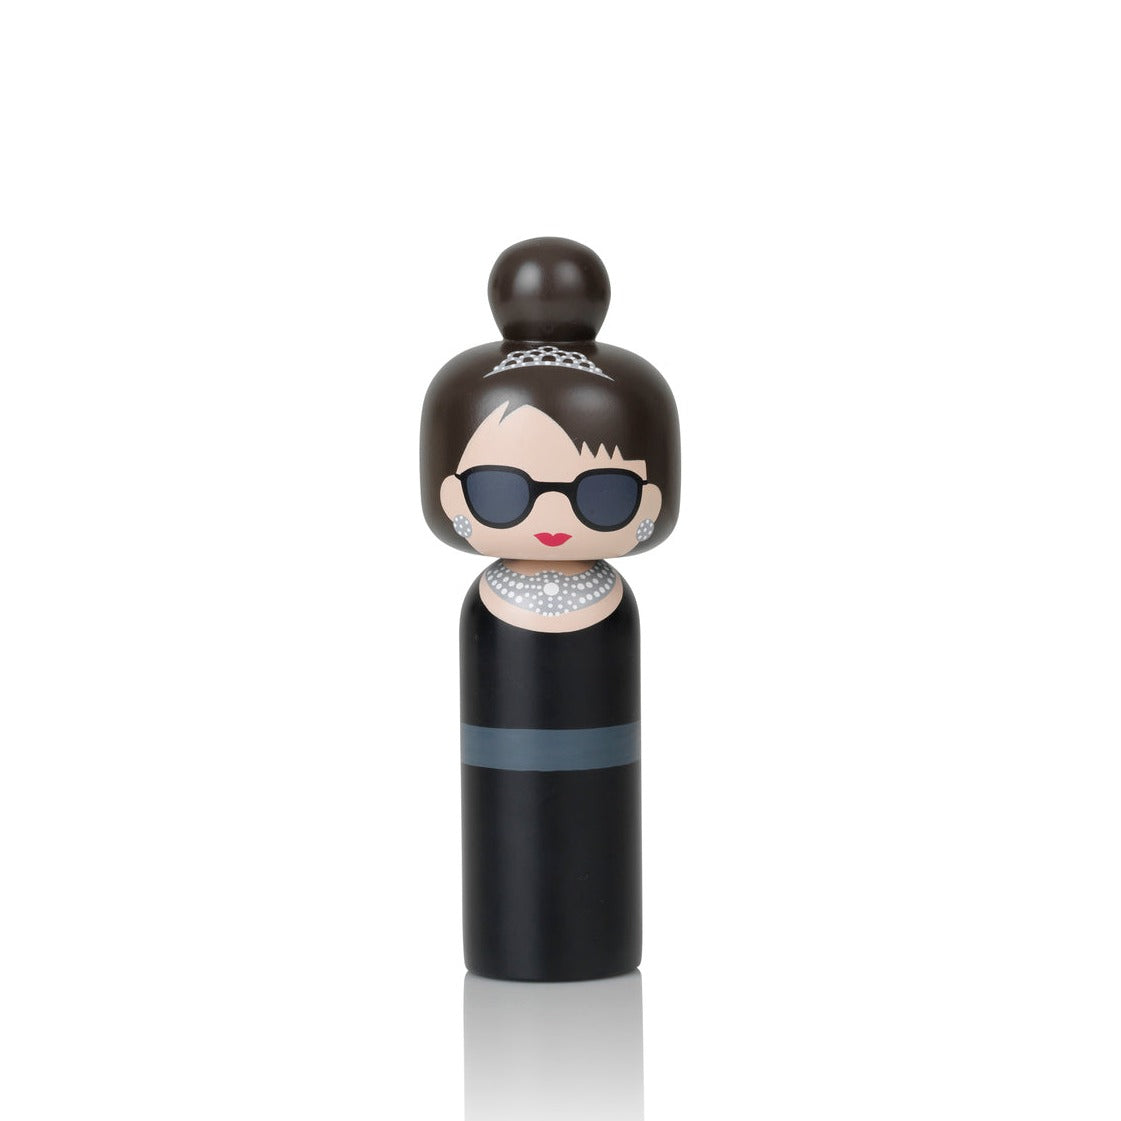 Figura de madera de Audrey Hepburn con gafas oscuras vestido negro y collar de diamantes